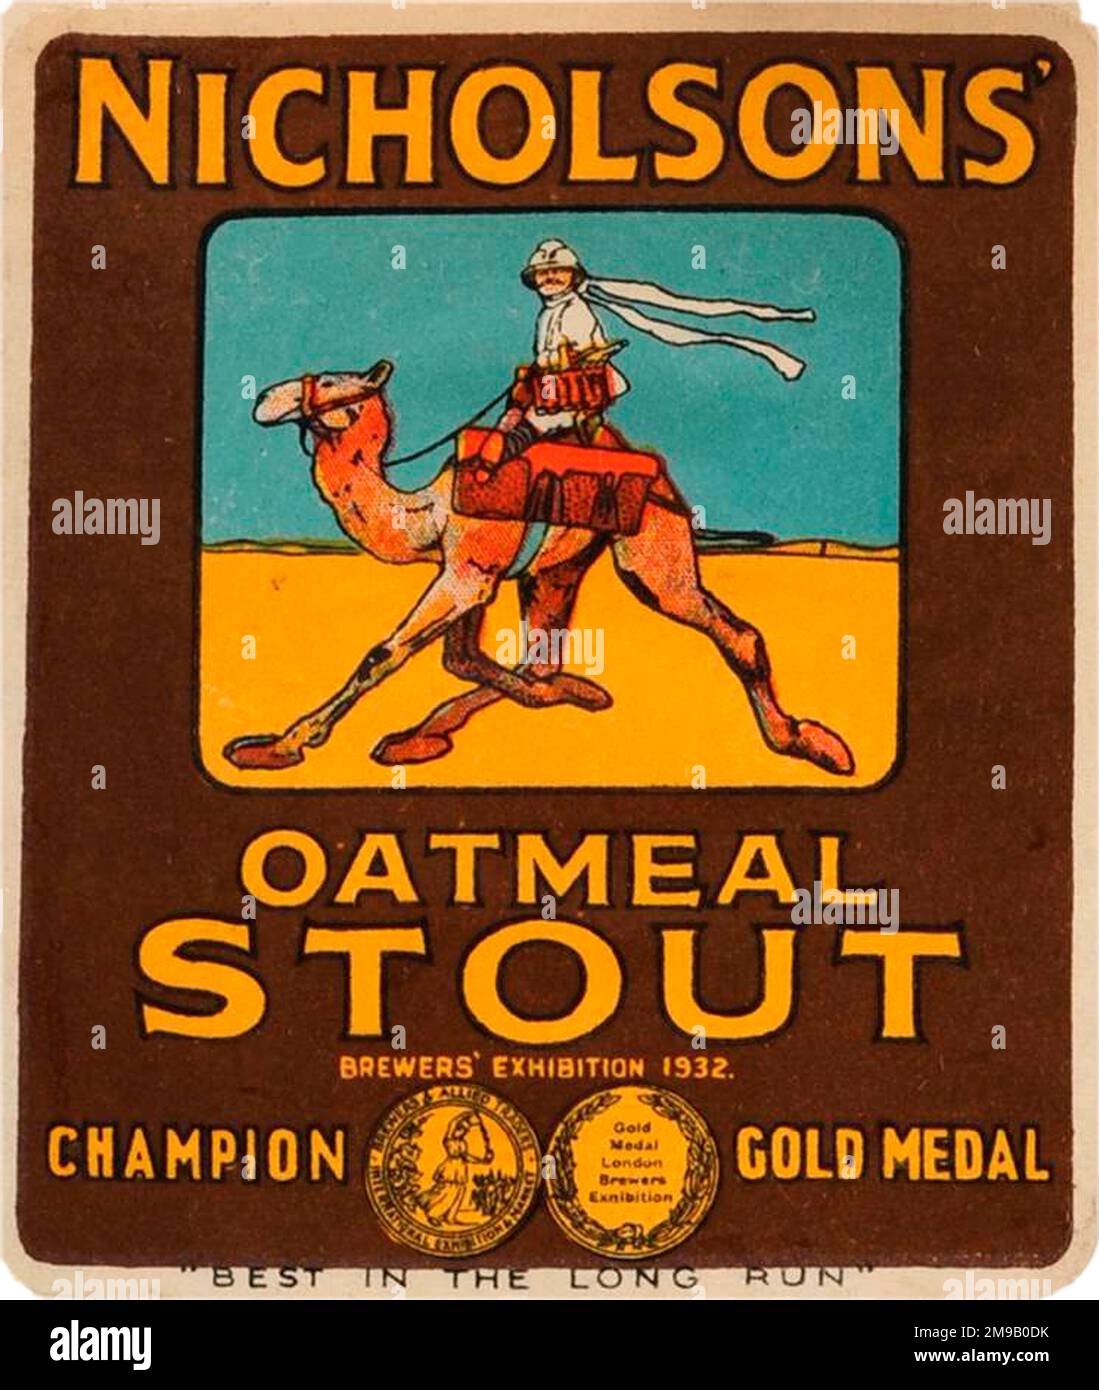 Nicholsons' Oatmeal Stout Stock Photo